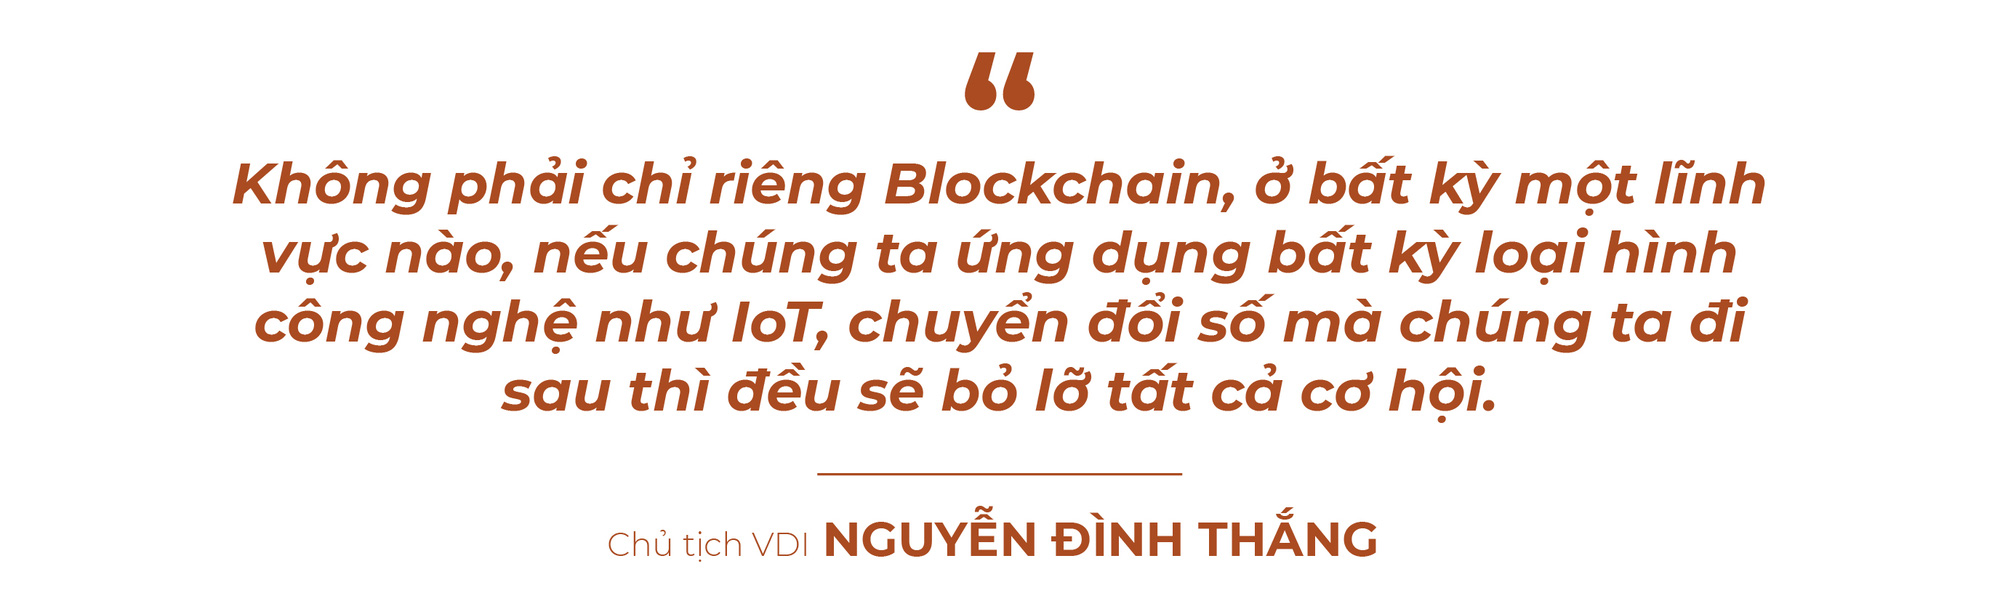 Chủ tịch VDI Nguyễn Đình Thắng: “Mọi người cứ nói đến blockchain là nói đến tiền ảo, mà tiền ảo là lừa đảo, thì ai cũng ngại” - Ảnh 5.